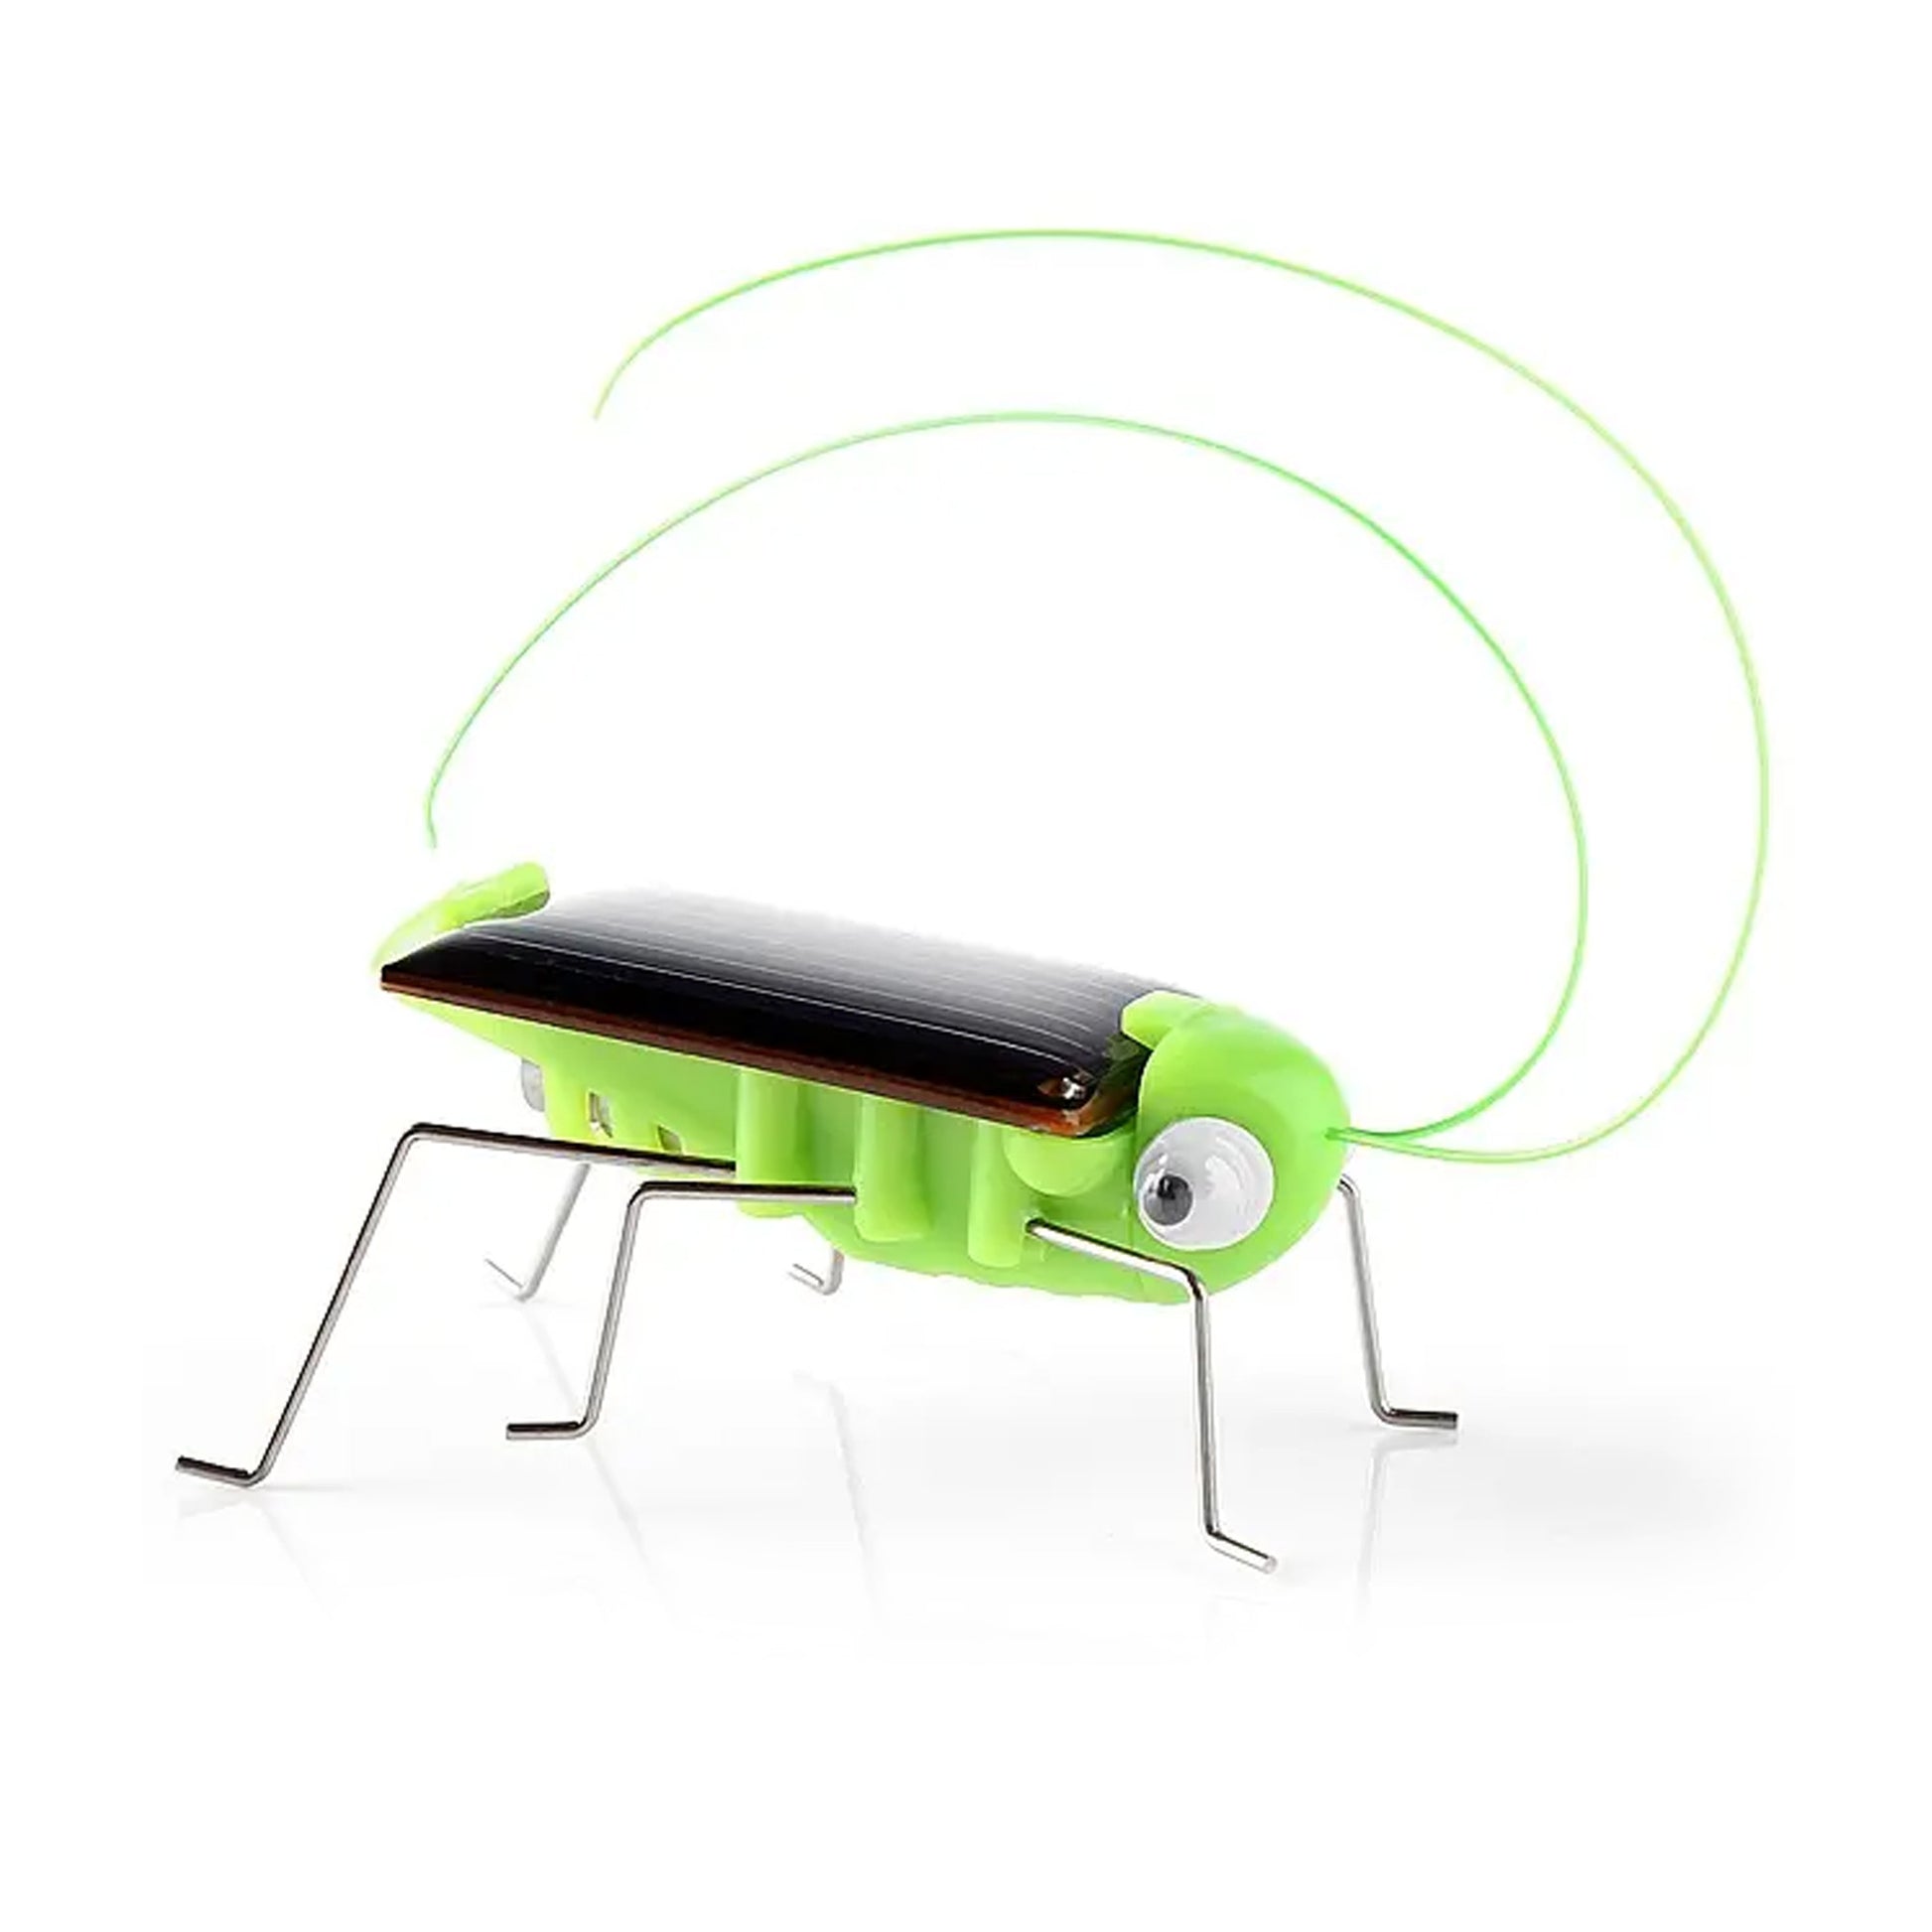 Mini Solar Grasshopper Toys for Children Solar Power Robot DIY Animal Toys - RS1911 - REES52